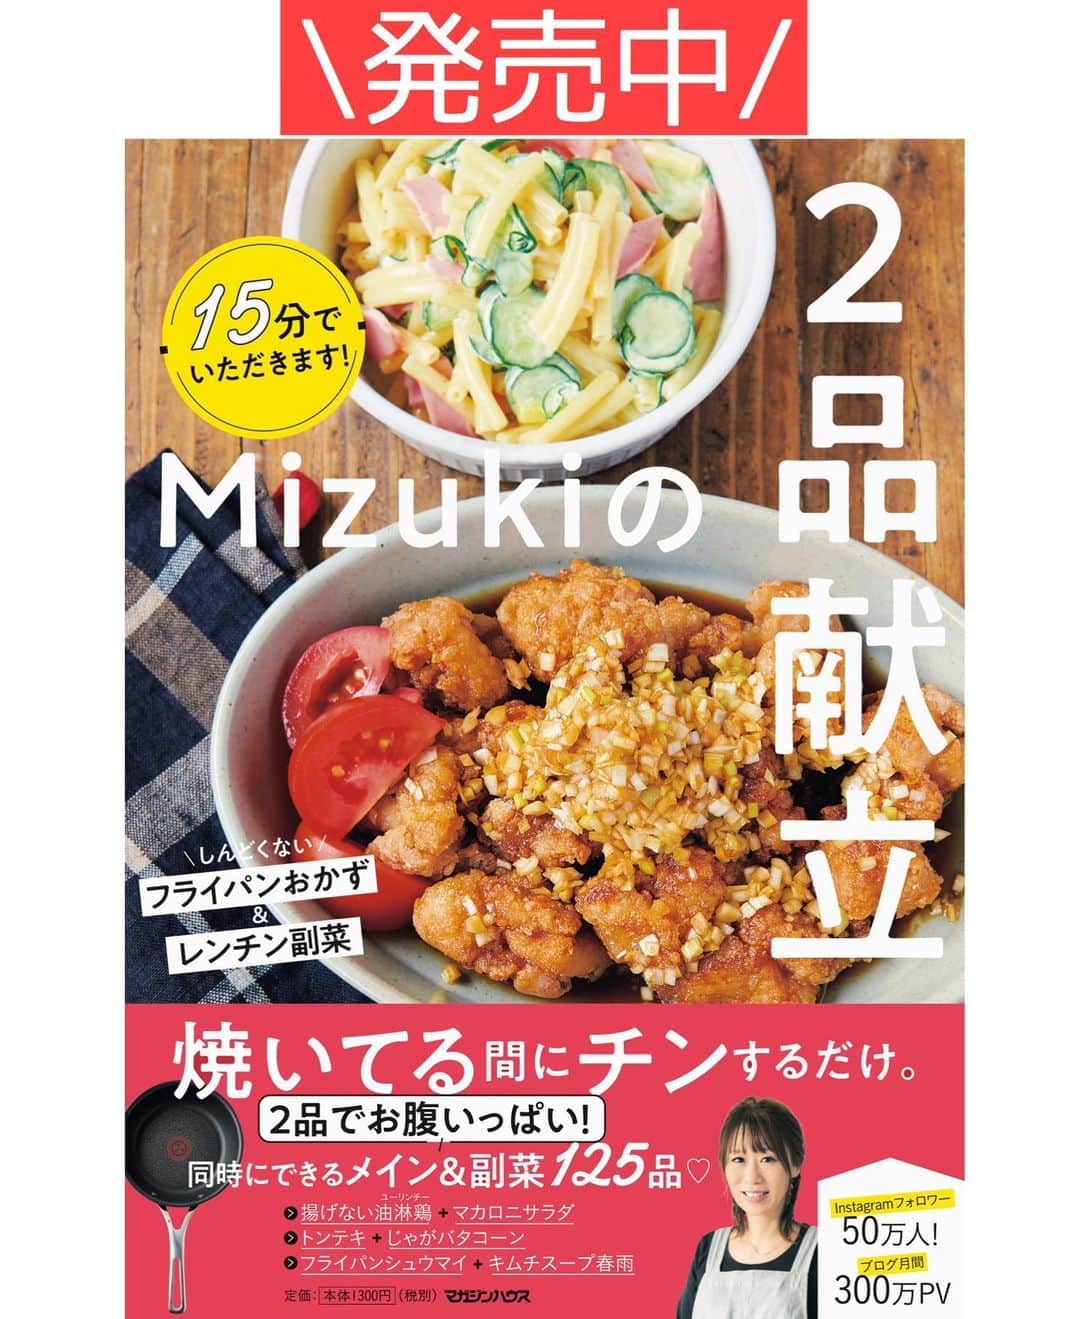 Mizuki【料理ブロガー・簡単レシピ】さんのインスタグラム写真 - (Mizuki【料理ブロガー・簡単レシピ】Instagram)「・﻿ 【#レシピ 】ーーーーーーーーーー﻿ ♡鶏肉とれんこんのバター醤油♡﻿ (2品献立提案あり)﻿ ーーーーーーーーーーーーーーーー﻿ ﻿ ﻿ ﻿ おはようございます(*^^*)﻿ ﻿ 今日はこっくり秋おかず♩﻿ \鶏肉とれんこんのバター醤油/﻿ をご紹介させていただきます♡﻿ ﻿ フライパンこんがり焼いて﻿ バター醤油で味付けしました♡﻿ ジューシーな鶏肉と﻿ シャクシャクのれんこんに﻿ コクのあるたれがよく合いますよ〜♩﻿ ﻿ しっかり食べ応えもあるので﻿ よかったらお試し下さいね(*^^*)﻿ ﻿ ﻿ ﻿ ＿＿＿＿＿＿＿＿＿＿＿＿＿＿＿＿＿＿＿＿﻿ 【2人分】﻿ 鶏もも肉...1枚(250g)﻿ れんこん...小1節(150g)﻿ 塩こしょう...少々﻿ 薄力粉...適量﻿ サラダ油...大1﻿ ●酒・みりん・醤油...各大1﻿ ●バター...10g﻿ (あれば)万能ねぎ...適量﻿ ﻿ 1.鶏肉は3cm大に切り、塩こしょうを振って薄力粉をまぶす。れんこんは8mm厚さの輪切り(大きければ半月切り)にし、水に3分晒して水気を切る。﻿ 2.フライパンにサラダ油を中火で熱し、1を並べて焼く。焼き色が付いたら裏返し、フタをして弱めの中火で3分蒸し焼きにする。﻿ 3.火が通ったら●を加えて煮からめ、小口切りにしたねぎをトッピングする。﻿ ￣￣￣￣￣￣￣￣￣￣￣￣￣￣￣￣￣￣￣￣﻿ ﻿ ﻿ ﻿ 《ポイント》﻿ ♦︎生焼けを防ぐ為、鶏肉はしっかり焼き色が付いてから裏返して下さい♩﻿ ﻿ ﻿ ﻿ ﻿ ﻿ ＿＿＿＿＿＿＿＿＿＿＿＿＿＿＿﻿ 🥣🥣🥣2品献立提案🥣🥣🥣﻿ ￣￣￣￣￣￣￣￣￣￣￣￣￣￣￣﻿ 【合間に作れるおすすめ副菜】﻿ >玉ねぎと厚揚げの煮物(P.92)﻿ >人参マカロニサラダ(P.89)﻿ (#Mizukiの2品献立 より)﻿ ﻿ 【献立の段取り】﻿ 副菜をレンジに入れてからメインを焼く🥢﻿ ﻿ ﻿ ﻿ ﻿ ﻿ 【⭐️発売中⭐️】﻿ _____________________________________﻿ \15分でいただきます/﻿ 📕#Mizukiの2品献立 📕﻿ (9月24日発売・マガジンハウス)﻿ ￣￣￣￣￣￣￣￣￣￣￣￣￣￣￣￣￣﻿ ﻿ 忙しい私たちには﻿ 2品くらいがちょうどいい！﻿ 『しんどくない献立、考えました』﻿ ￣￣￣￣￣￣￣￣￣￣￣￣￣￣￣￣﻿ ﻿ ーーーーーPART.1 ーーーーー﻿ 【Mizukiのお墨つき！２品献立ベスト10】﻿ 約15分でできる10献立をご紹介！﻿ メインは全部フライパン、副菜はレンチンor混ぜるだけ♡﻿ ﻿ ーーーーーPART.2 ーーーーー﻿ 【フライパンひとつ！今夜のメインおかず】﻿ 献立の主役になる肉や魚のおかず50品！﻿ Part3の副菜と組み合わせれば﻿ 献立のバリエーションが広がりますよ♩﻿ ﻿ ーーーーー PART.3 ーーーーー﻿ 【合間に作れる！ 野菜別かんたん副菜】﻿ レンチンor和えるだけの副菜レシピを﻿ 素材別にたっぷり収録♩﻿ ﻿ ーーーーー番外編ーーーーー﻿ 【ひとつで満足！ご飯＆麺】﻿ 【具だくさん！おかずスープ】﻿ 【オーブンいらずのおやつレシピ】﻿ ￣￣￣￣￣￣￣￣￣￣￣￣￣￣￣￣￣￣﻿ (ハイライトにリンク🔗あります💗)﻿ ﻿ ﻿ ﻿ ﻿ ﻿ ﻿ ﻿ ￣￣￣￣￣￣￣￣￣￣￣￣￣￣￣￣￣￣﻿ レシピを作って下さった際や﻿ レシピ本についてのご投稿には﻿ タグ付け( @mizuki_31cafe )して﻿ お知らせいただけると嬉しいです😊💕﻿ ﻿ ﻿ ﻿ ﻿ ﻿ #鶏肉#れんこん#秋#バター醤油#Mizuki#簡単レシピ#時短レシピ#節約レシピ#料理#フーディーテーブル#マカロニメイト#おうちごはん#デリスタグラマー#料理好きな人と繋がりたい#食べ物#料理記録#おうちごはんlover#写真好きな人と繋がりたい#foodpic#cooking#recipe#lin_stagrammer#foodporn#yummy#f52grams#鶏肉とれんこんのバター醤油m」9月28日 7時23分 - mizuki_31cafe